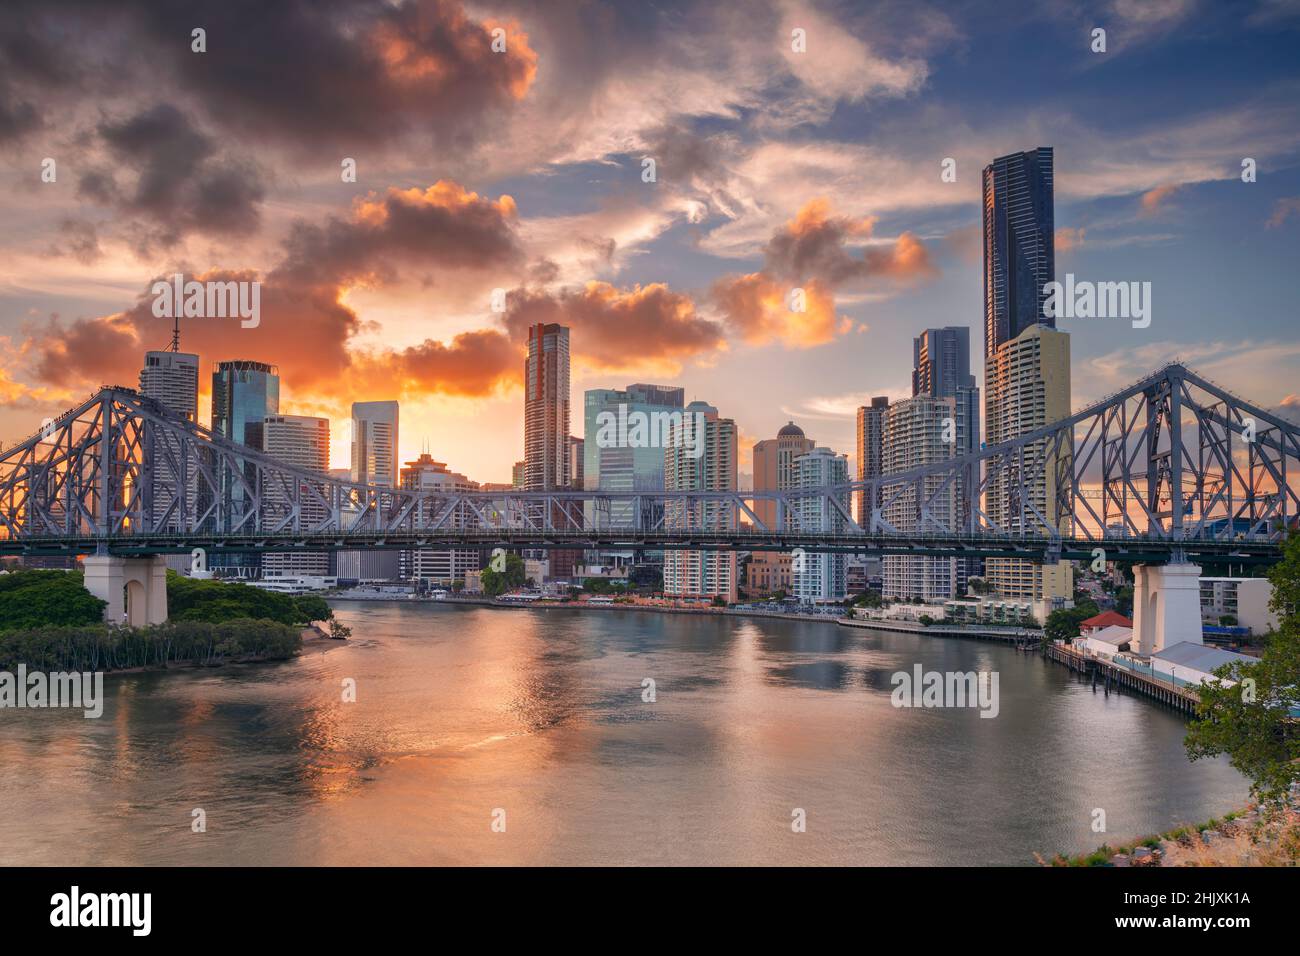 Brisbane, Australia. Immagine del paesaggio urbano dello skyline di Brisbane con Story Bridge e riflesso della città sul fiume Brisbane al tramonto. Foto Stock